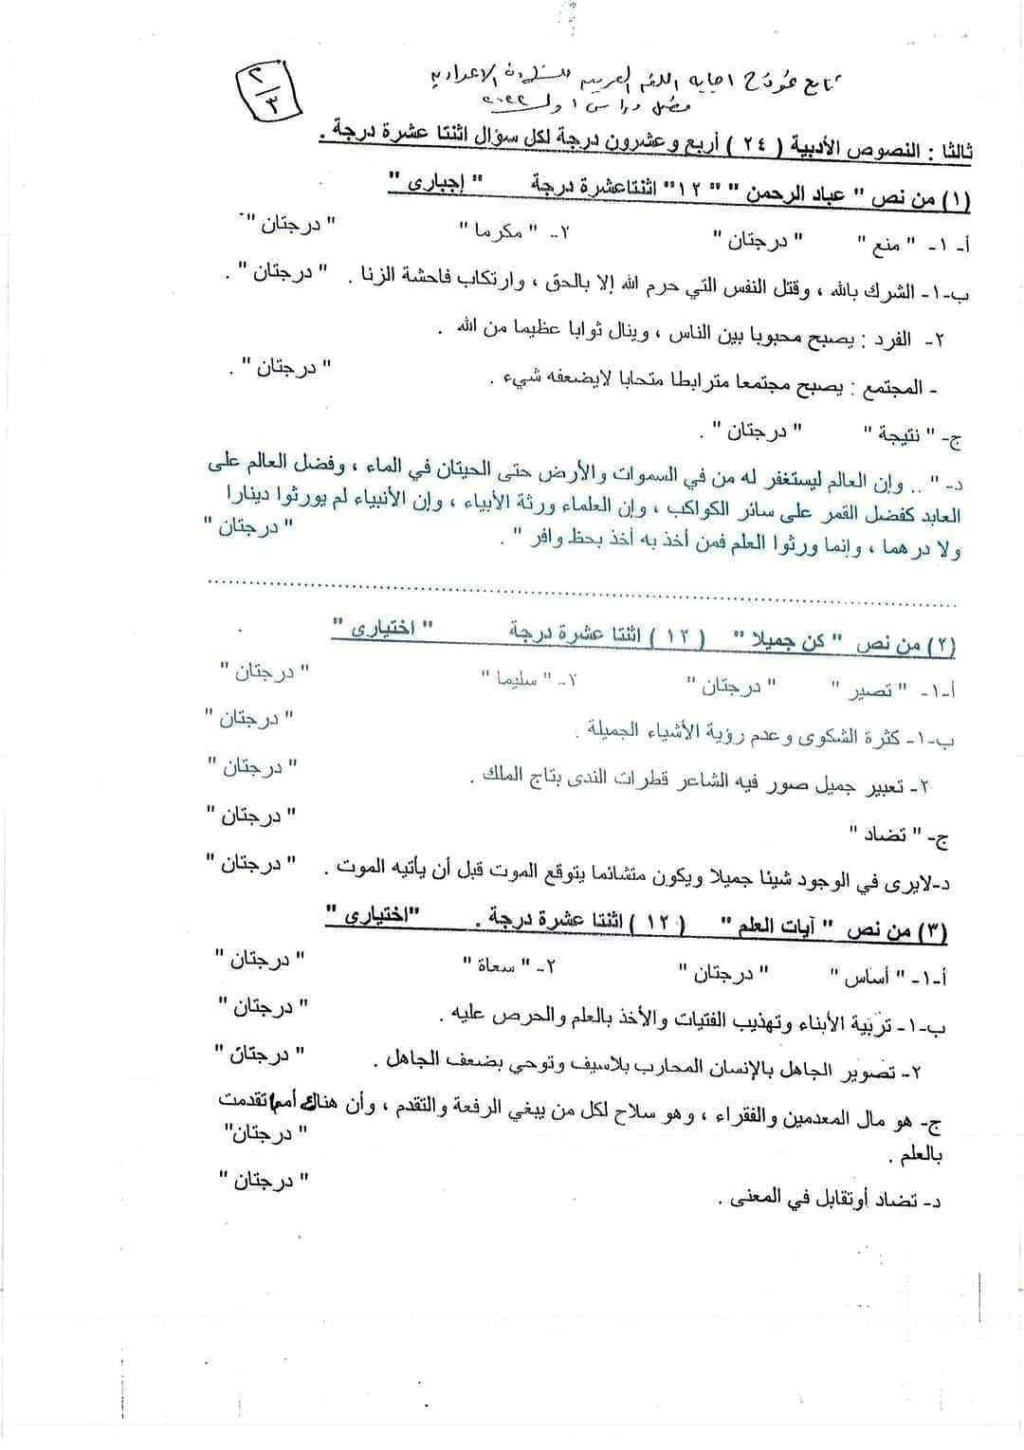  امتحان اللغة العربية للصف الثالث الاعدادي ترم اول 2022 محافظة الغربية 4_63910